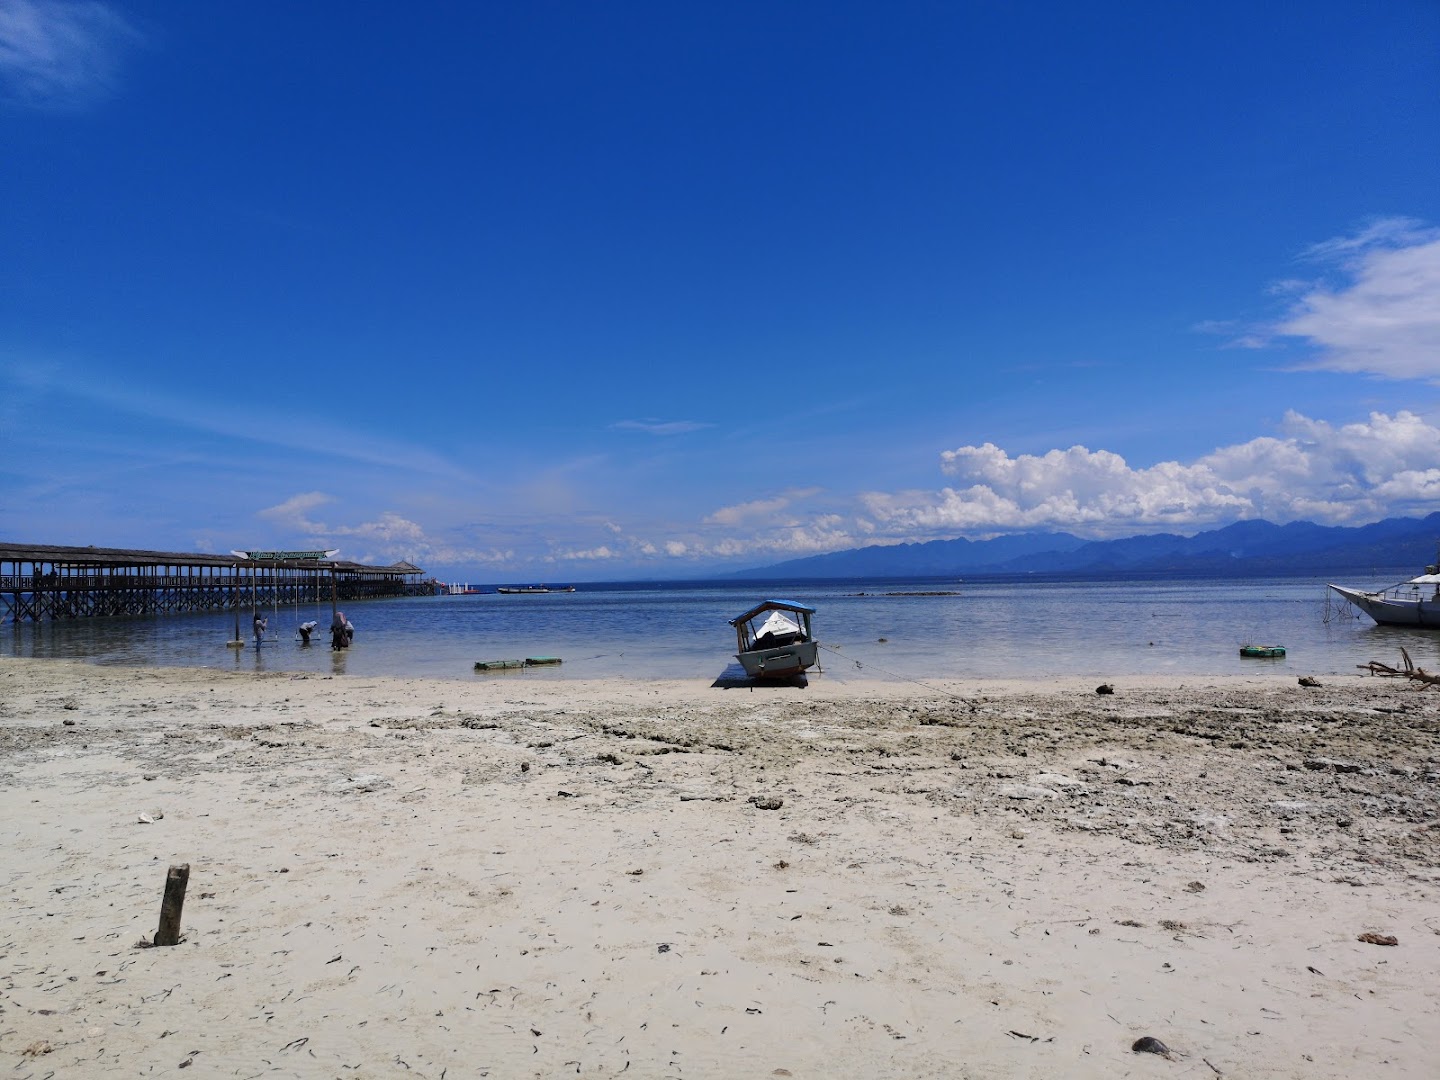 Wisata Pulau Karampuang: Harga Tiket, Foto, Lokasi, Fasilitas dan Spot